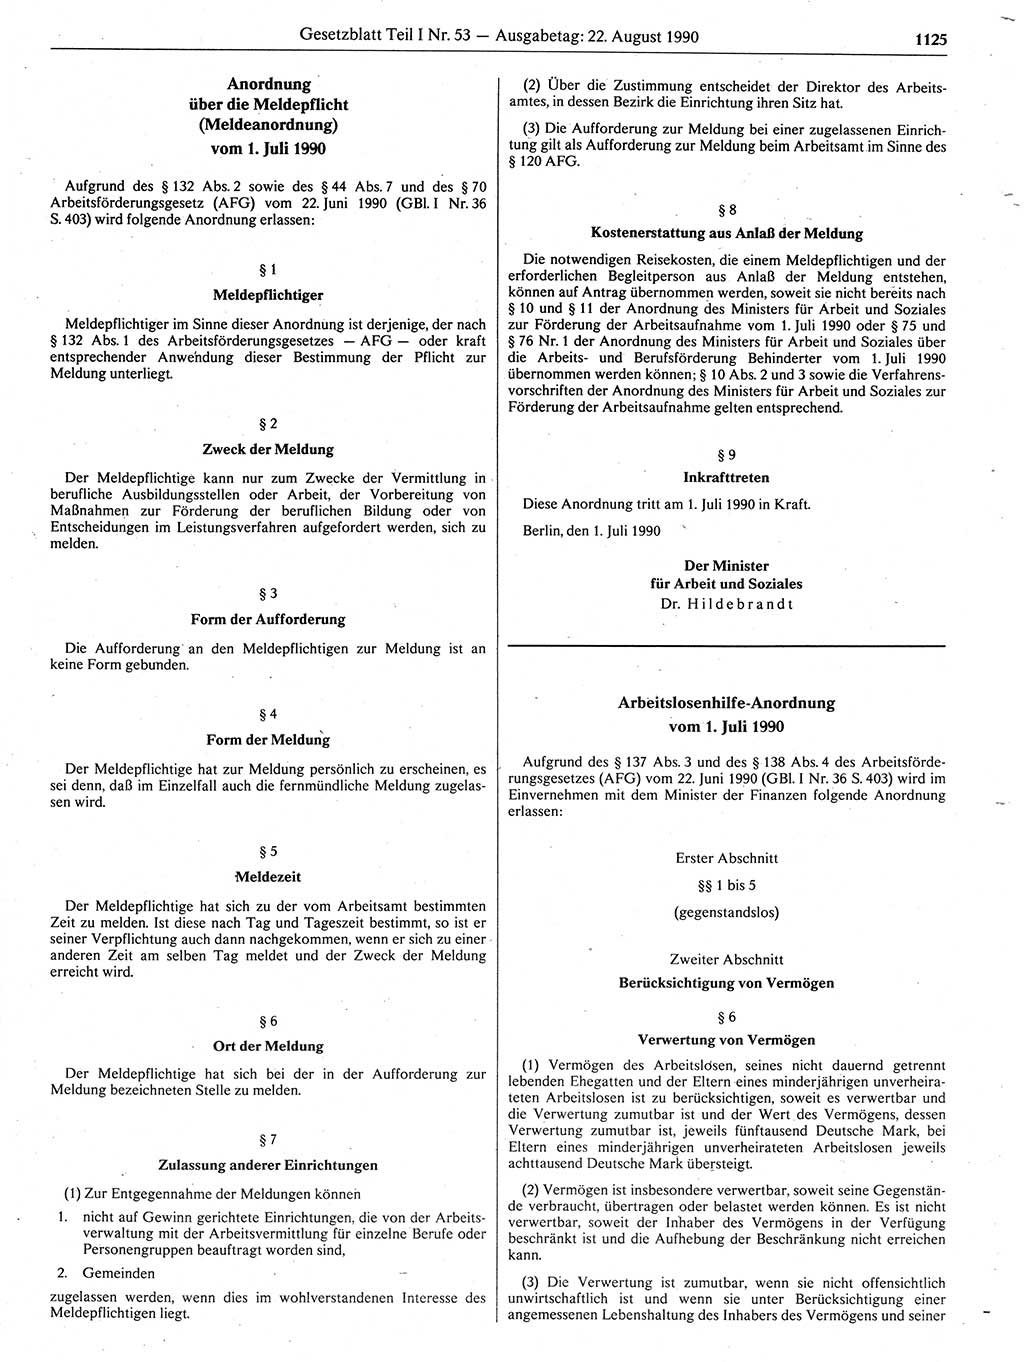 Gesetzblatt (GBl.) der Deutschen Demokratischen Republik (DDR) Teil Ⅰ 1990, Seite 1125 (GBl. DDR Ⅰ 1990, S. 1125)